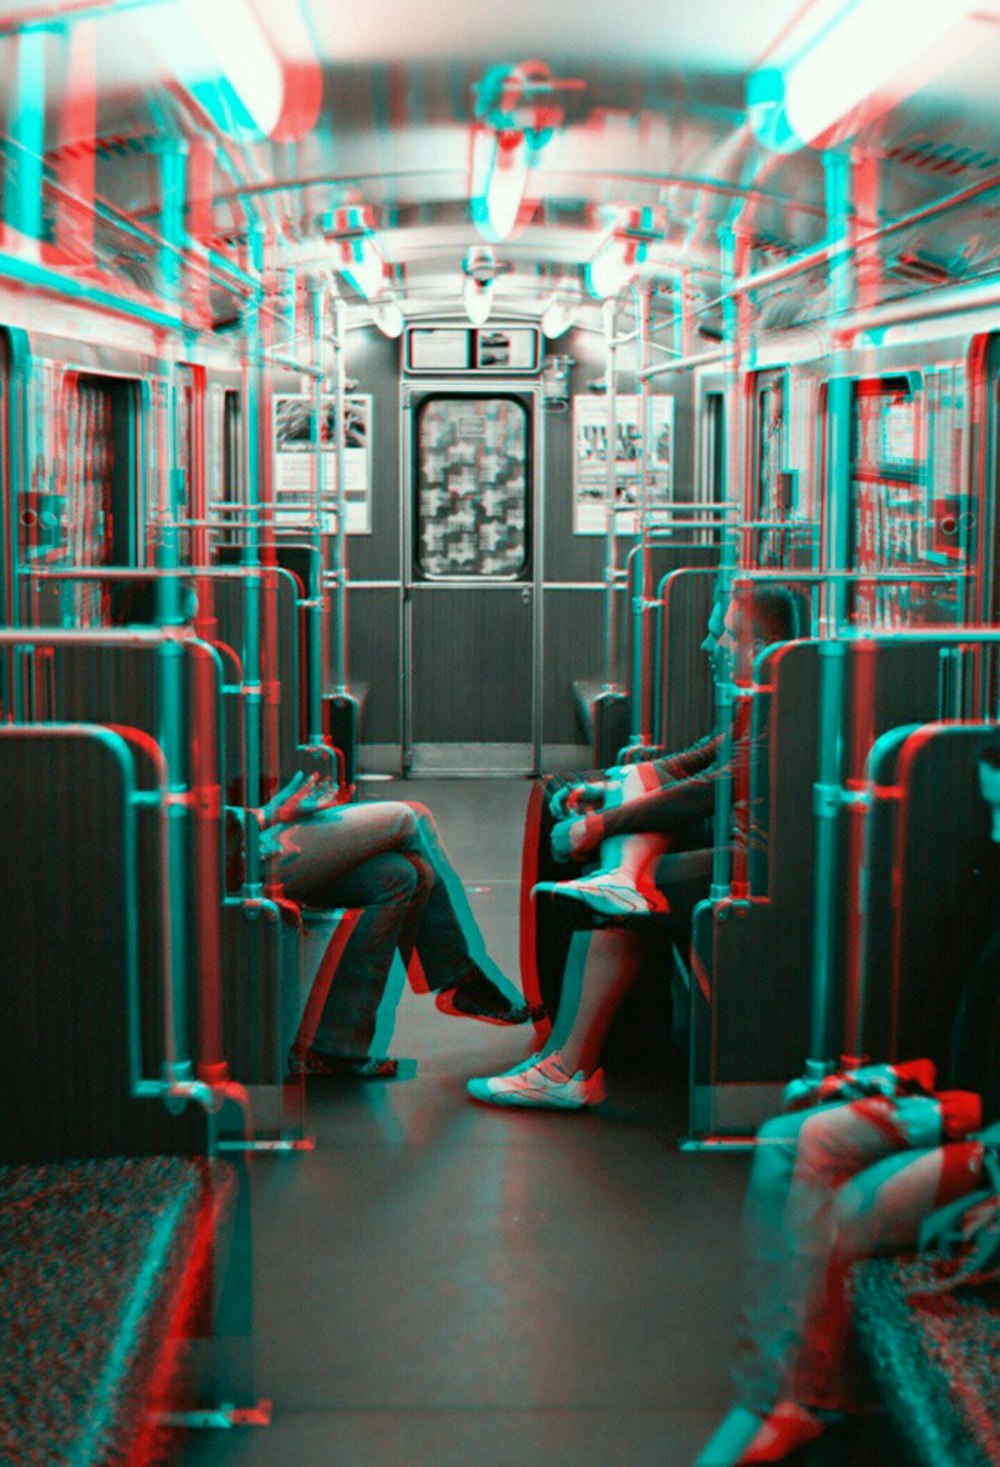 기차 안에 앉아 있는 동안 서로 마주보고 있는 두 사람의 회색조 사진